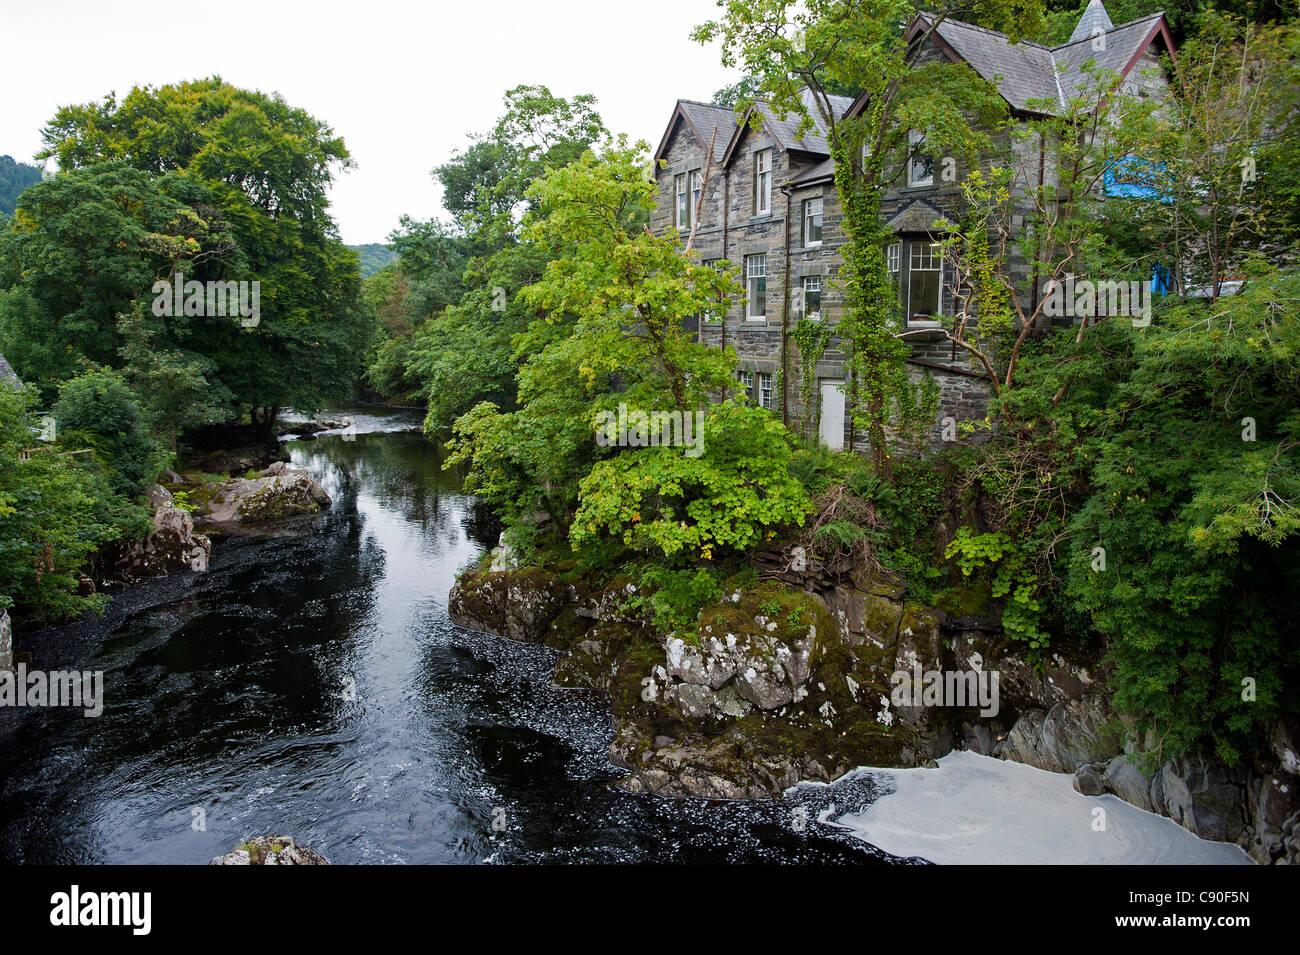 Le village de Betws-Y-coed, le parc national de Snowdonia, Pays de Galles, Royaume-Uni Banque D'Images